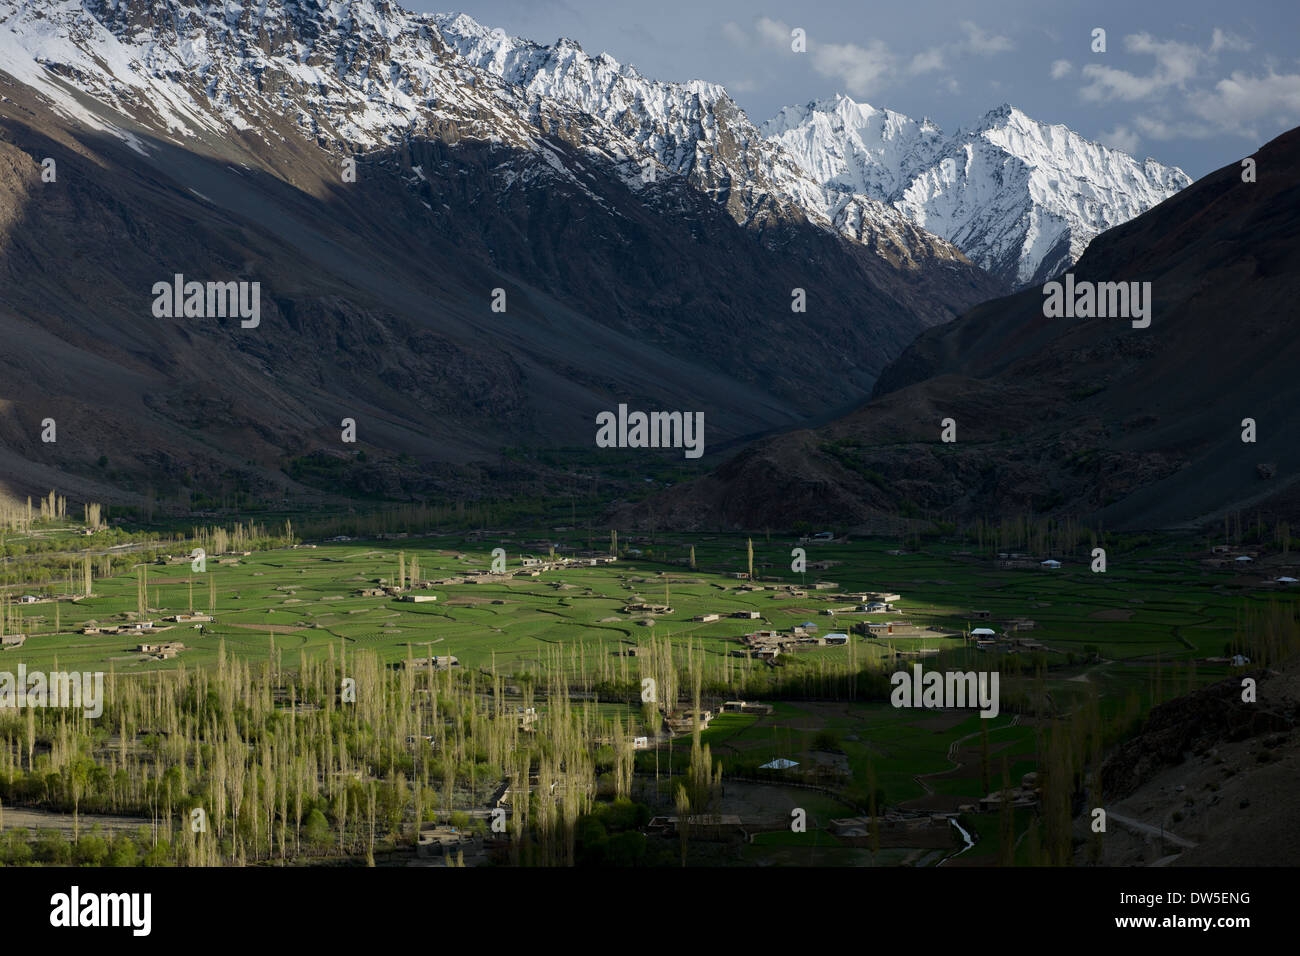 Montagnes couvertes de neige dominant de la verdoyante Ghizar River (rivière Gilgit) Vallée près de Kinisotek Shandur-Gilgit, vu de la route, près du Shandur Pass, Gilgit-Baltistan, Pakistan Banque D'Images